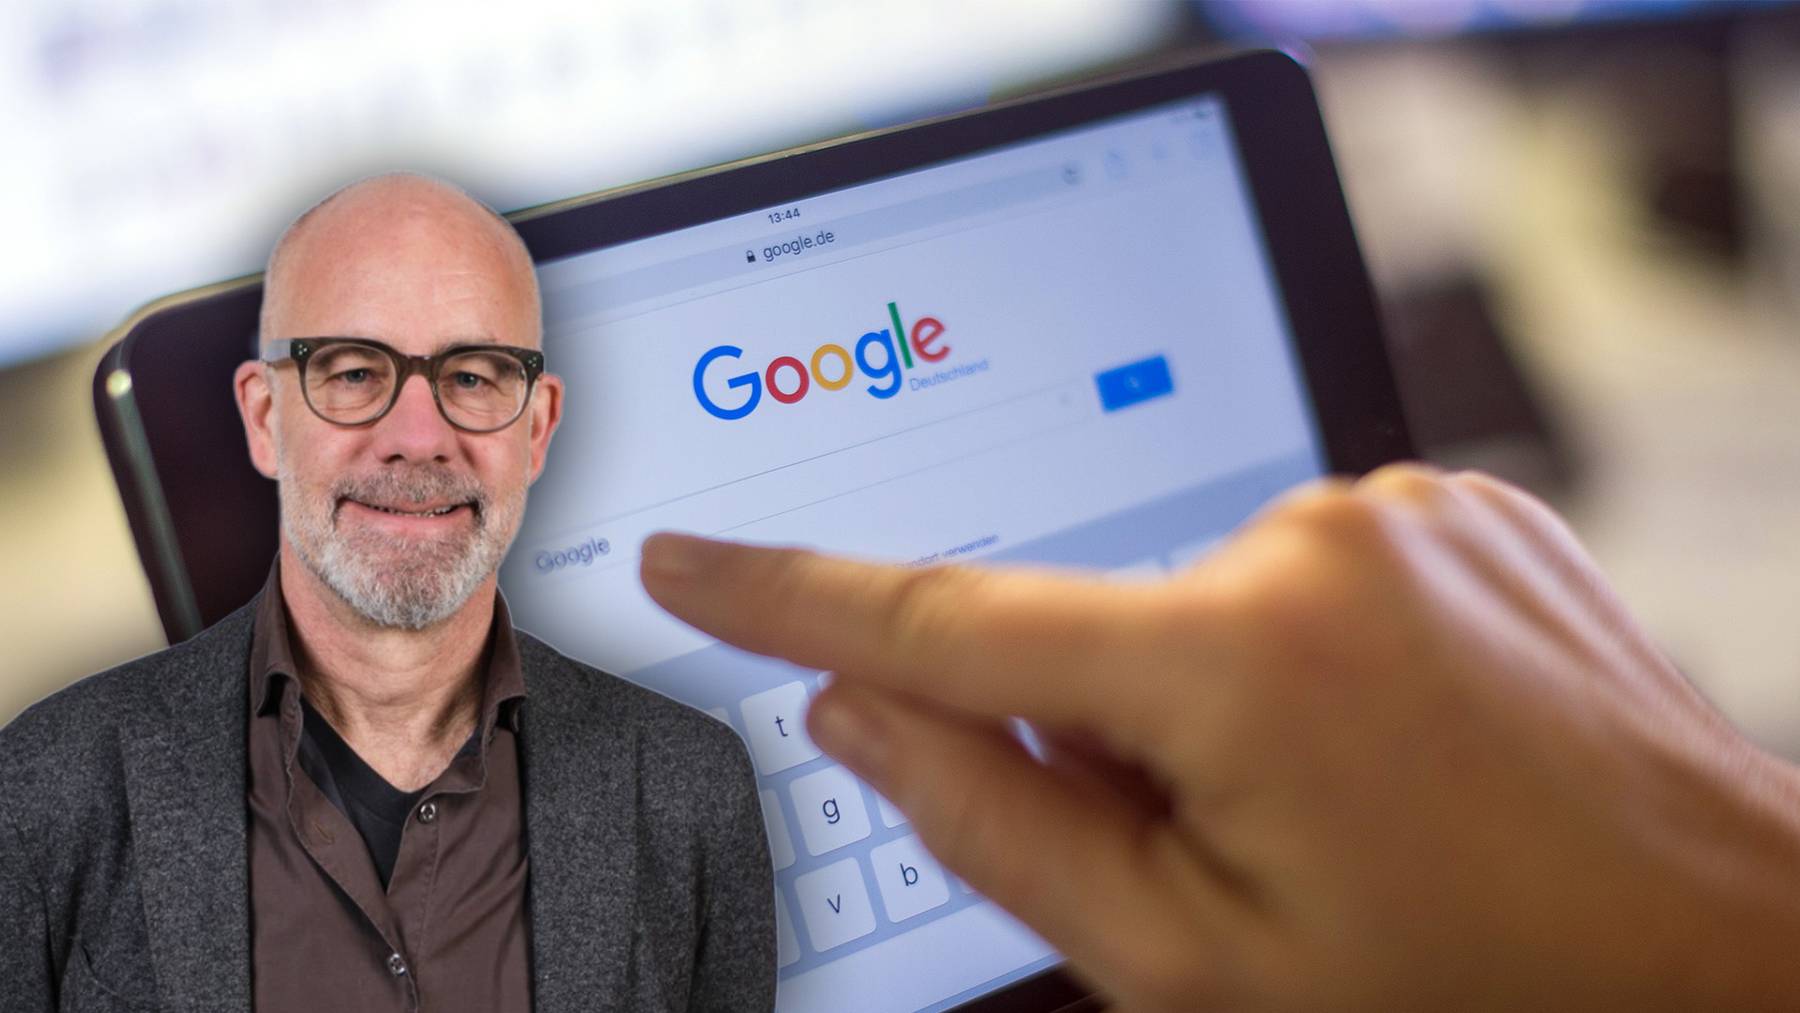 Daniel Speich von der Universität Luzern spricht darüber, wie Google unser Verhalten verändert hat.